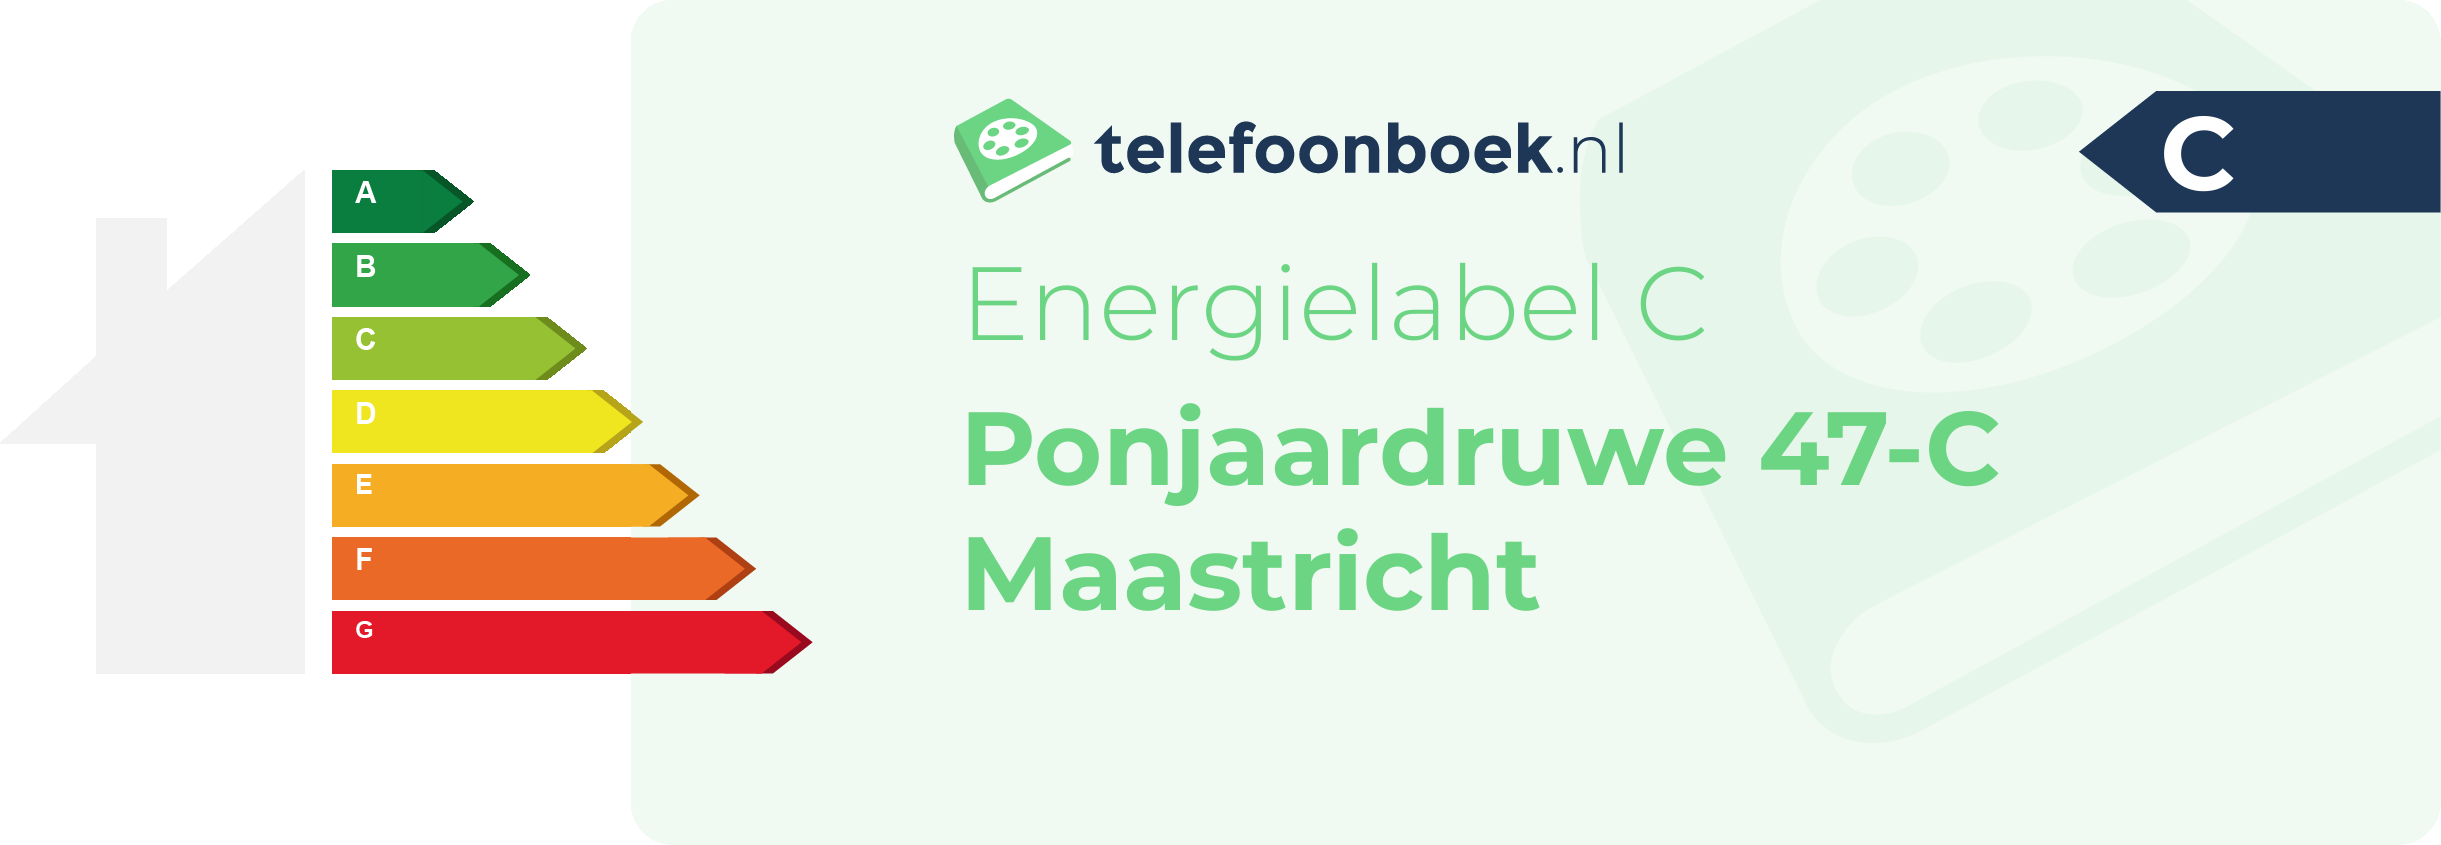 Energielabel Ponjaardruwe 47-C Maastricht